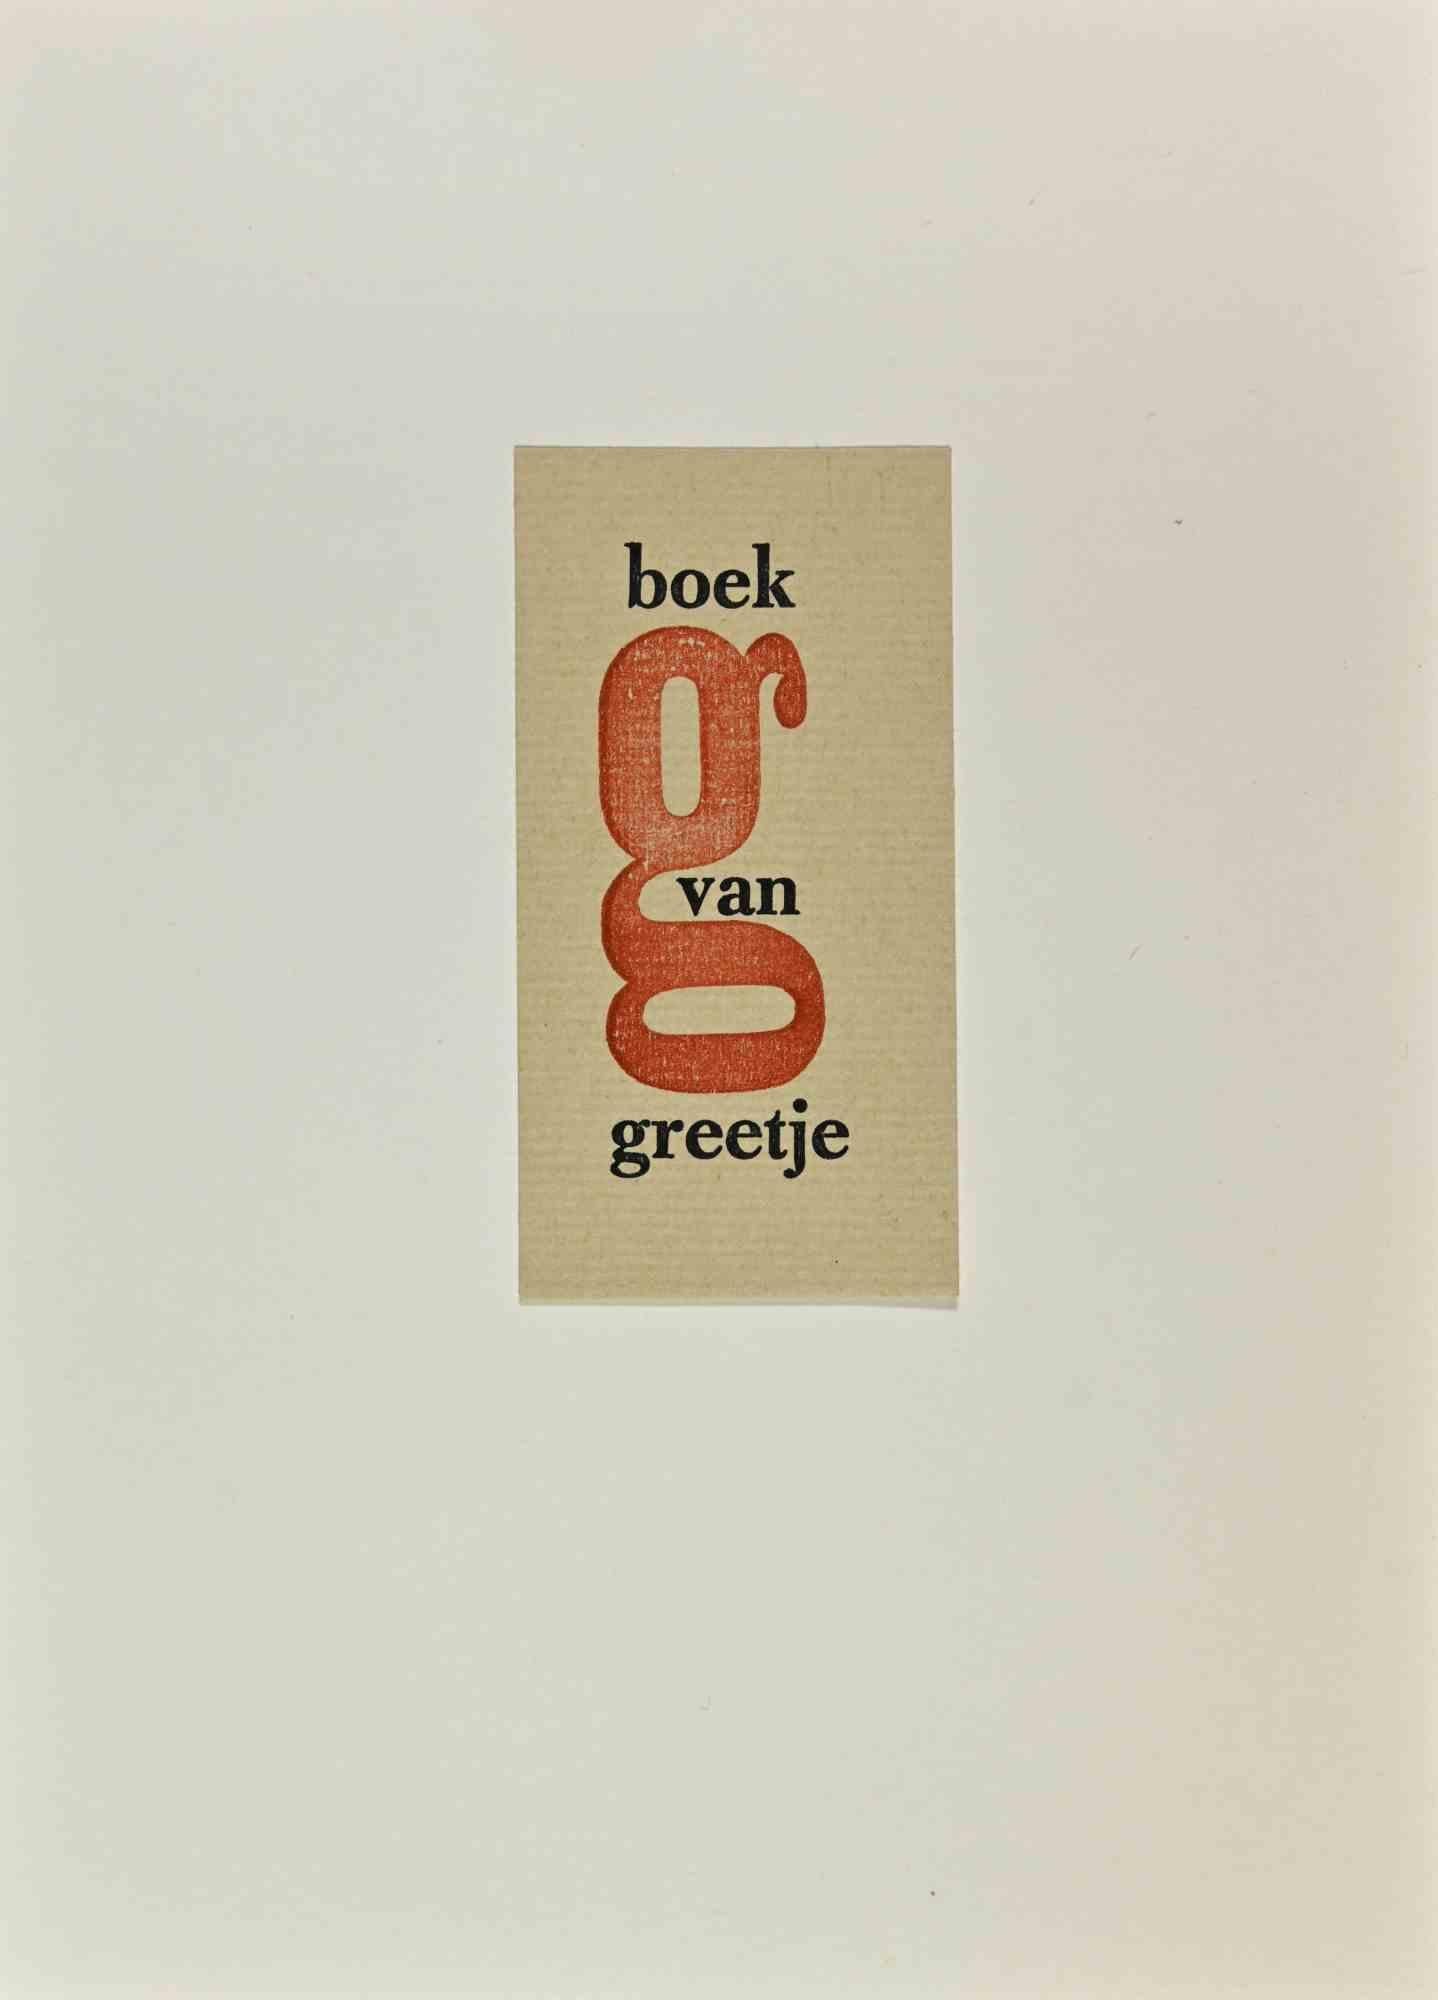   Ex Libris - Boek van Greetje - Holzschnitt - Mitte des 20. Jahrhunderts – Art von Unknown